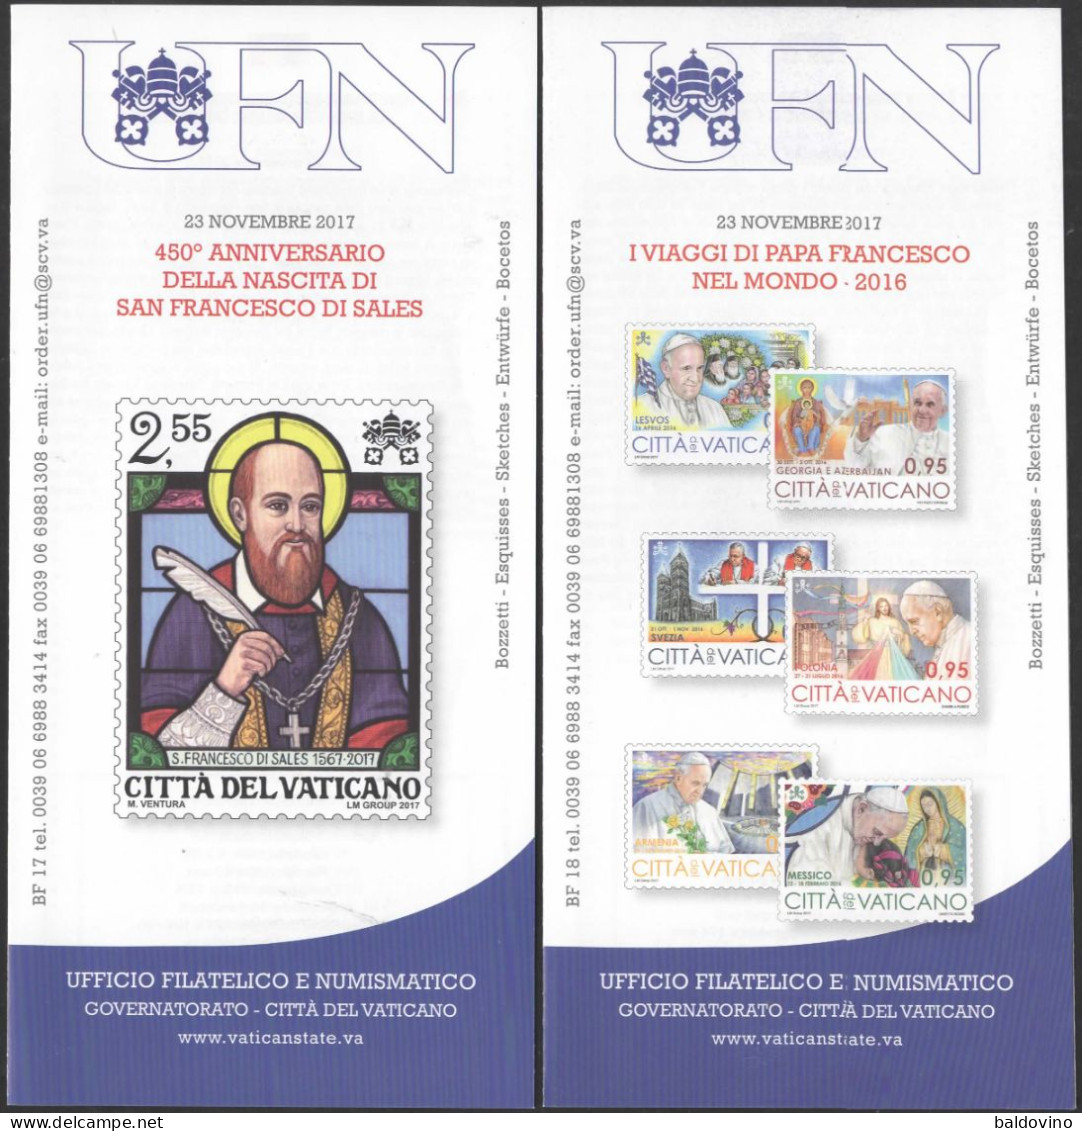 Vaticano 2017 22 bollettini ufficiali emissioni filatelico-numismatiche